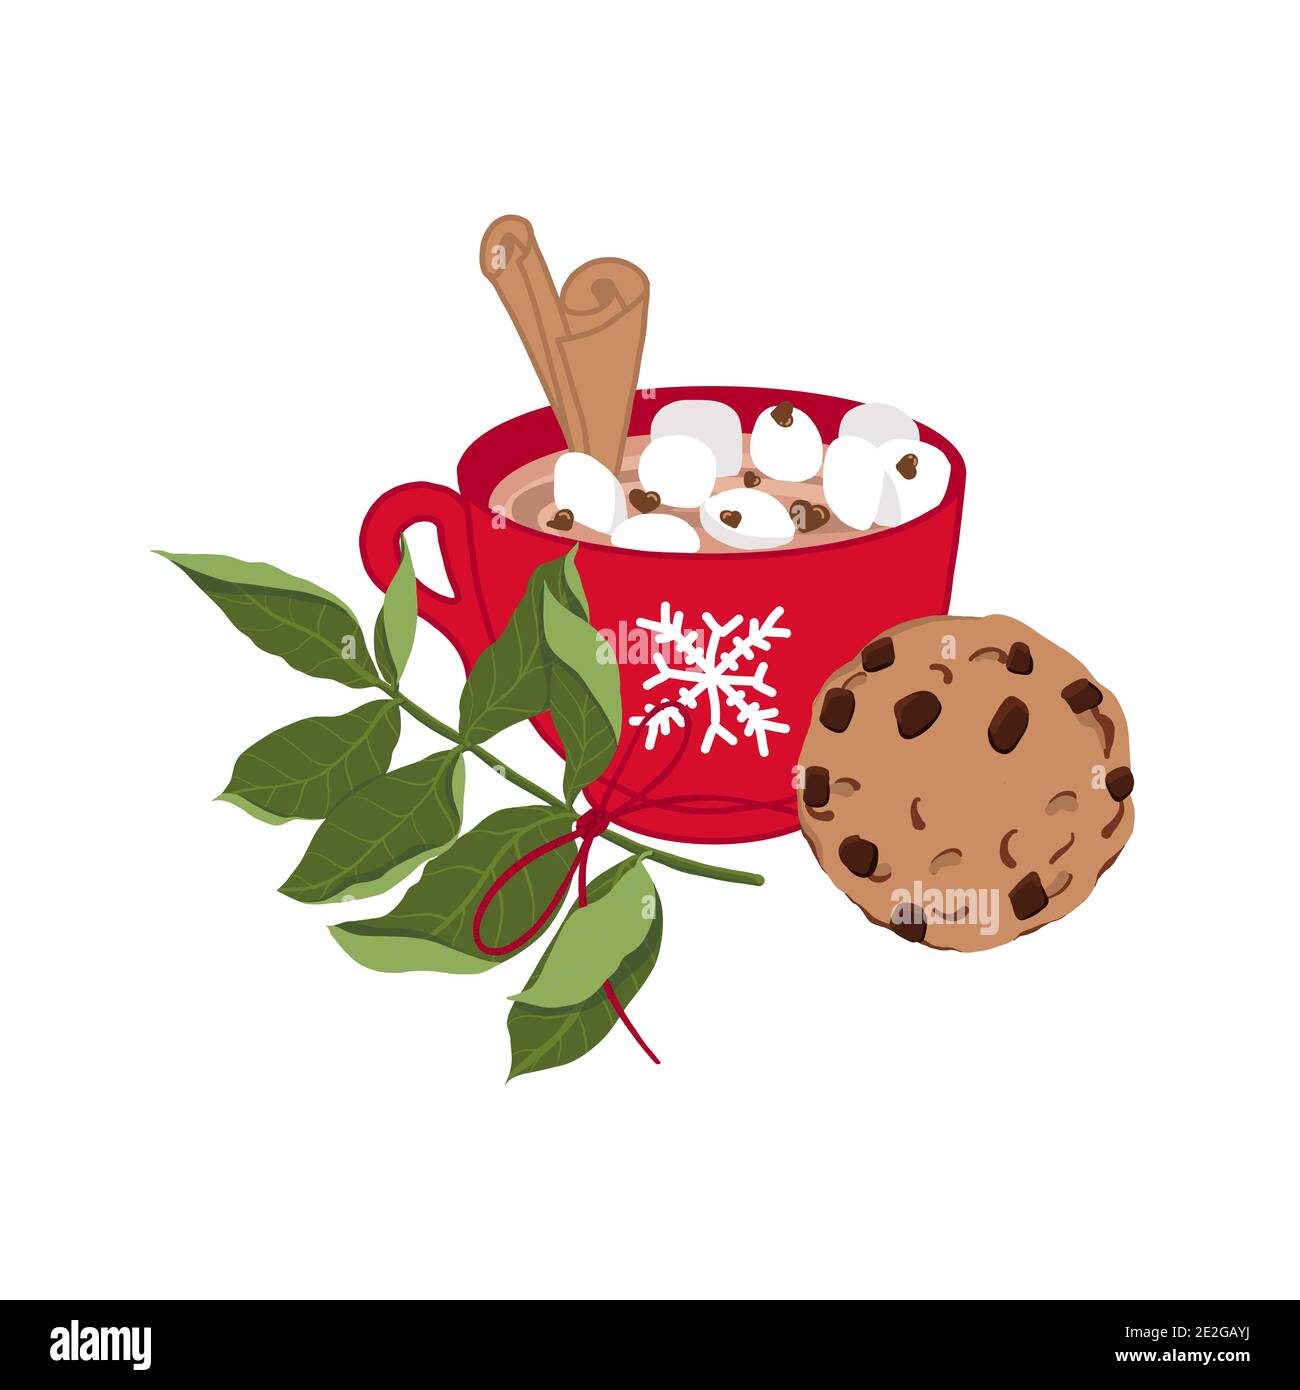 Rote Tasse mit heißer Schokolade oder Kakao, Marshmallows, Zimt, Schokoladentropfen. Schokoladenkekse und ein Baumzweig. Weihnachten Grußkarte Design Stock Vektor